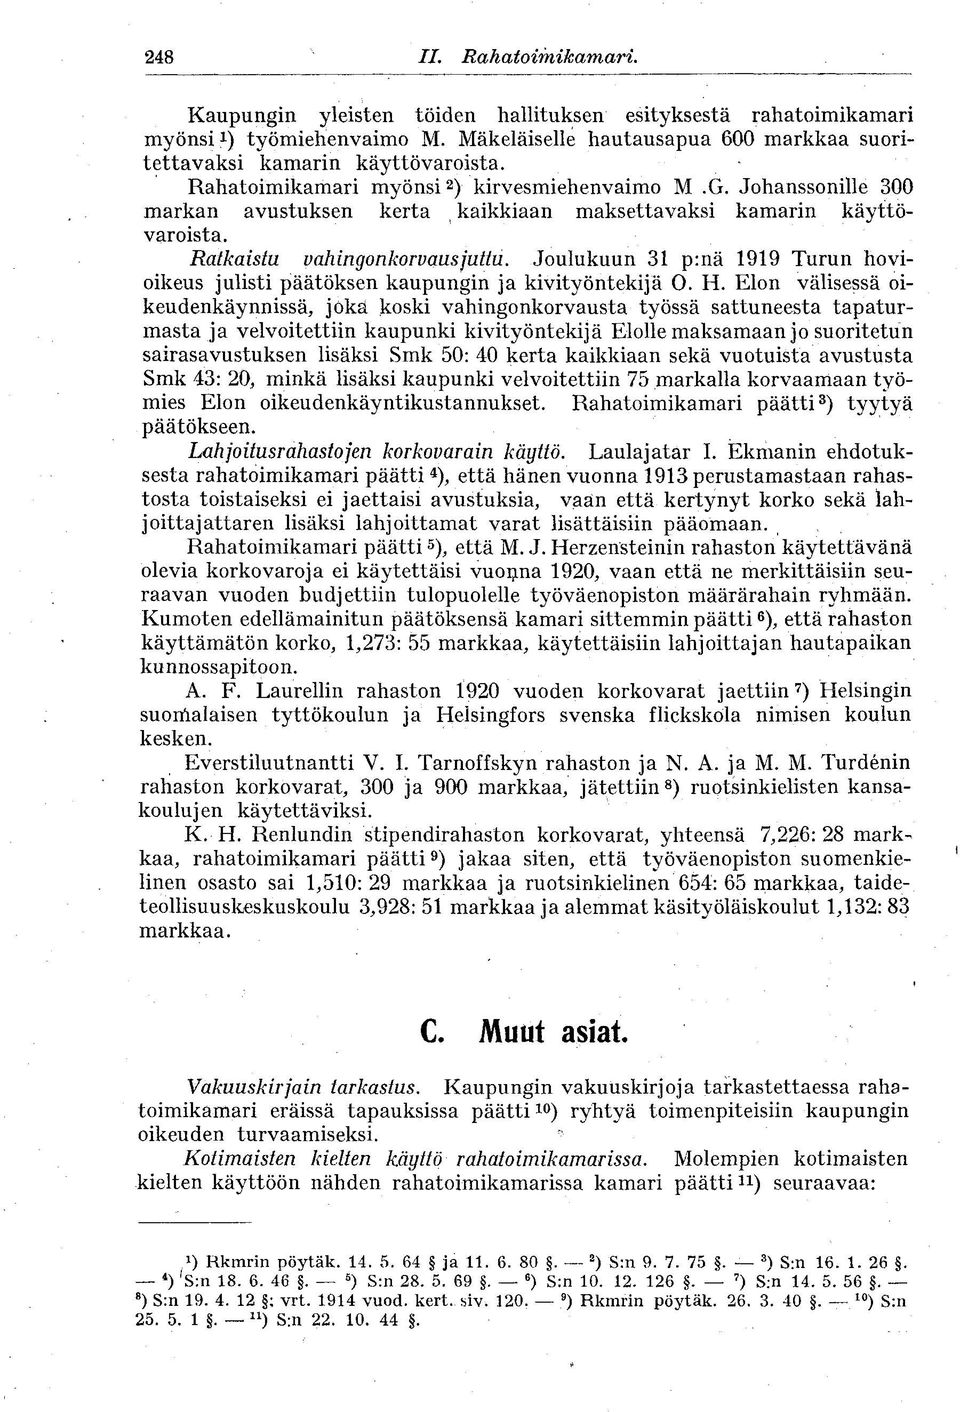 Joulukuun 31 p:nä 1919 Turun hovioikeus julisti päätöksen kaupungin ja kivityöntekijä O. H.